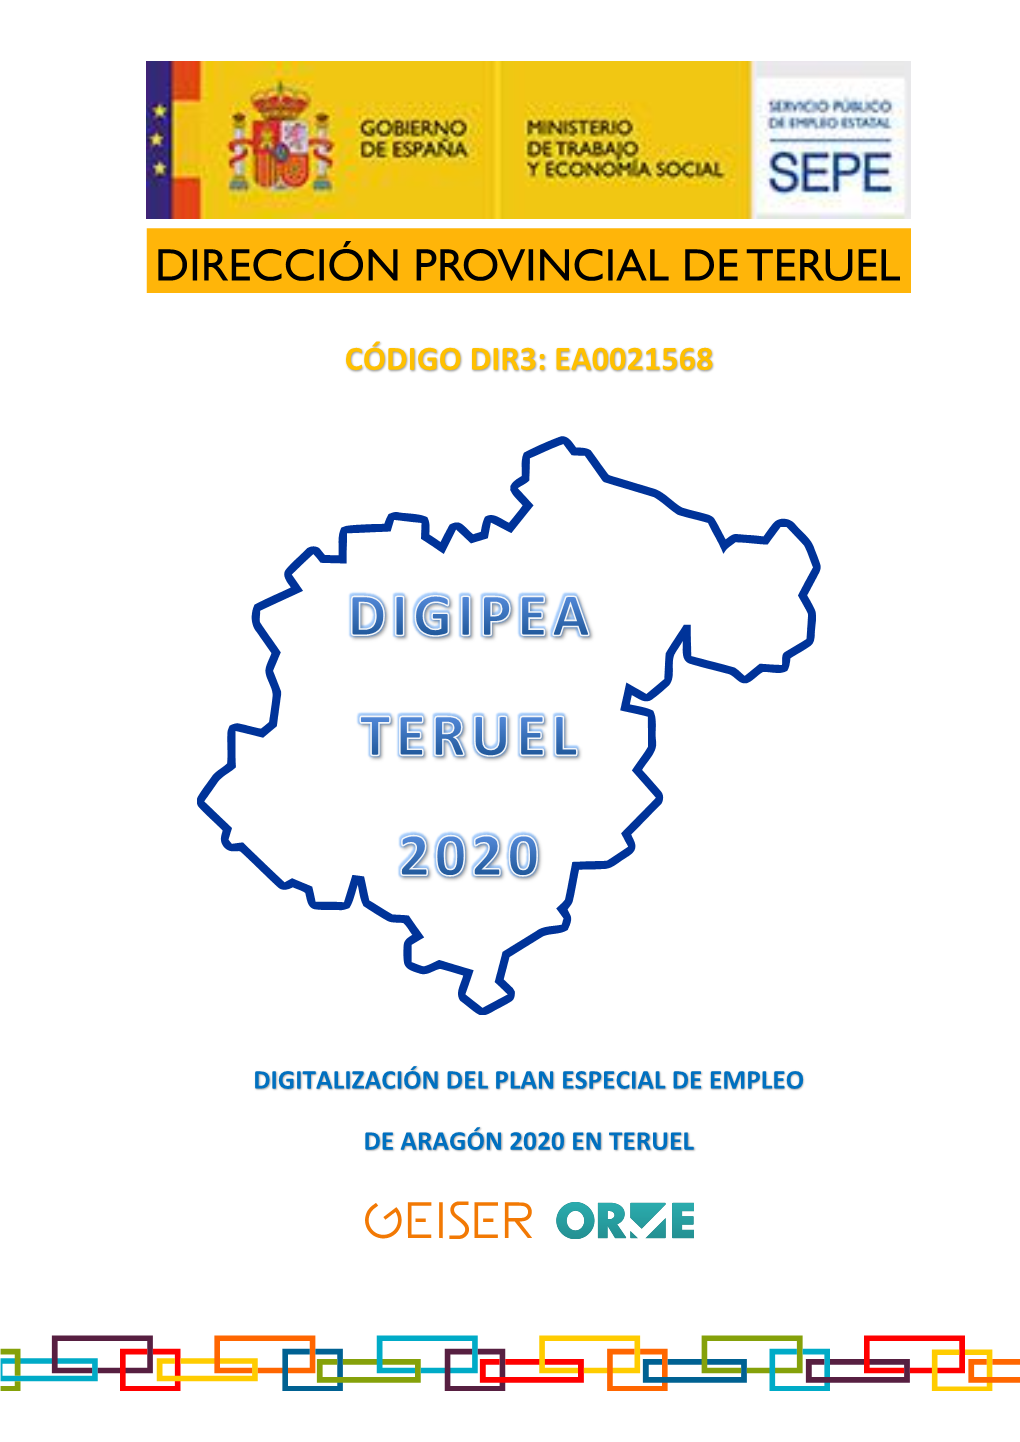 Digipea Teruel 2020